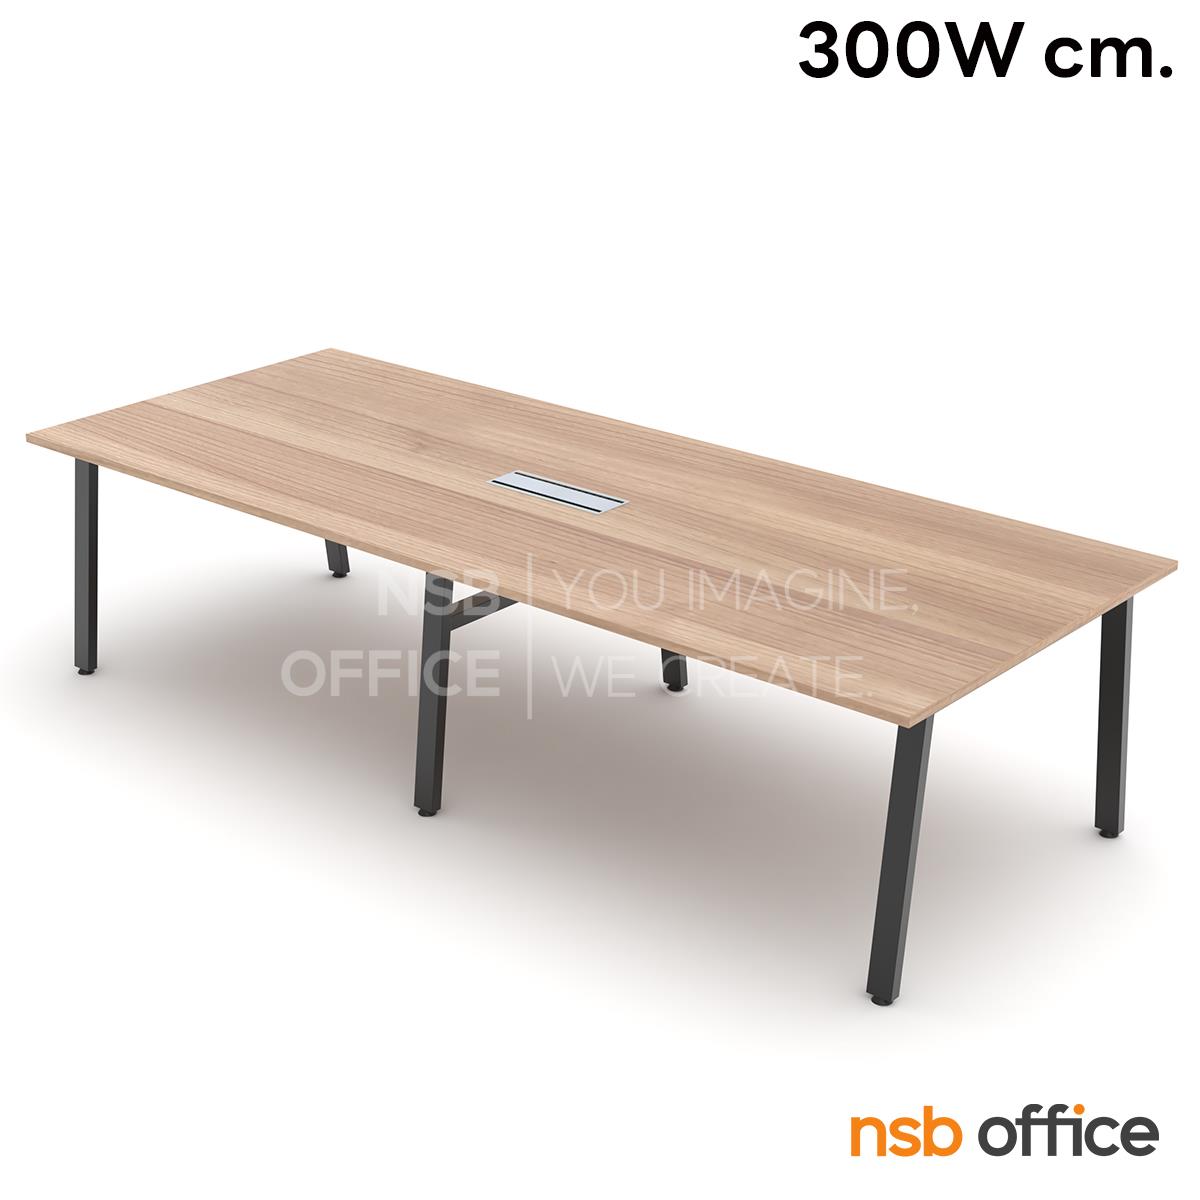 A05A251:โต๊ะประชุมสี่เหลี่ยม รุ่น Scott (สก็อตต์) ขนาด 300W, 360W, 420W, 480W cm. ขาเหล็ก